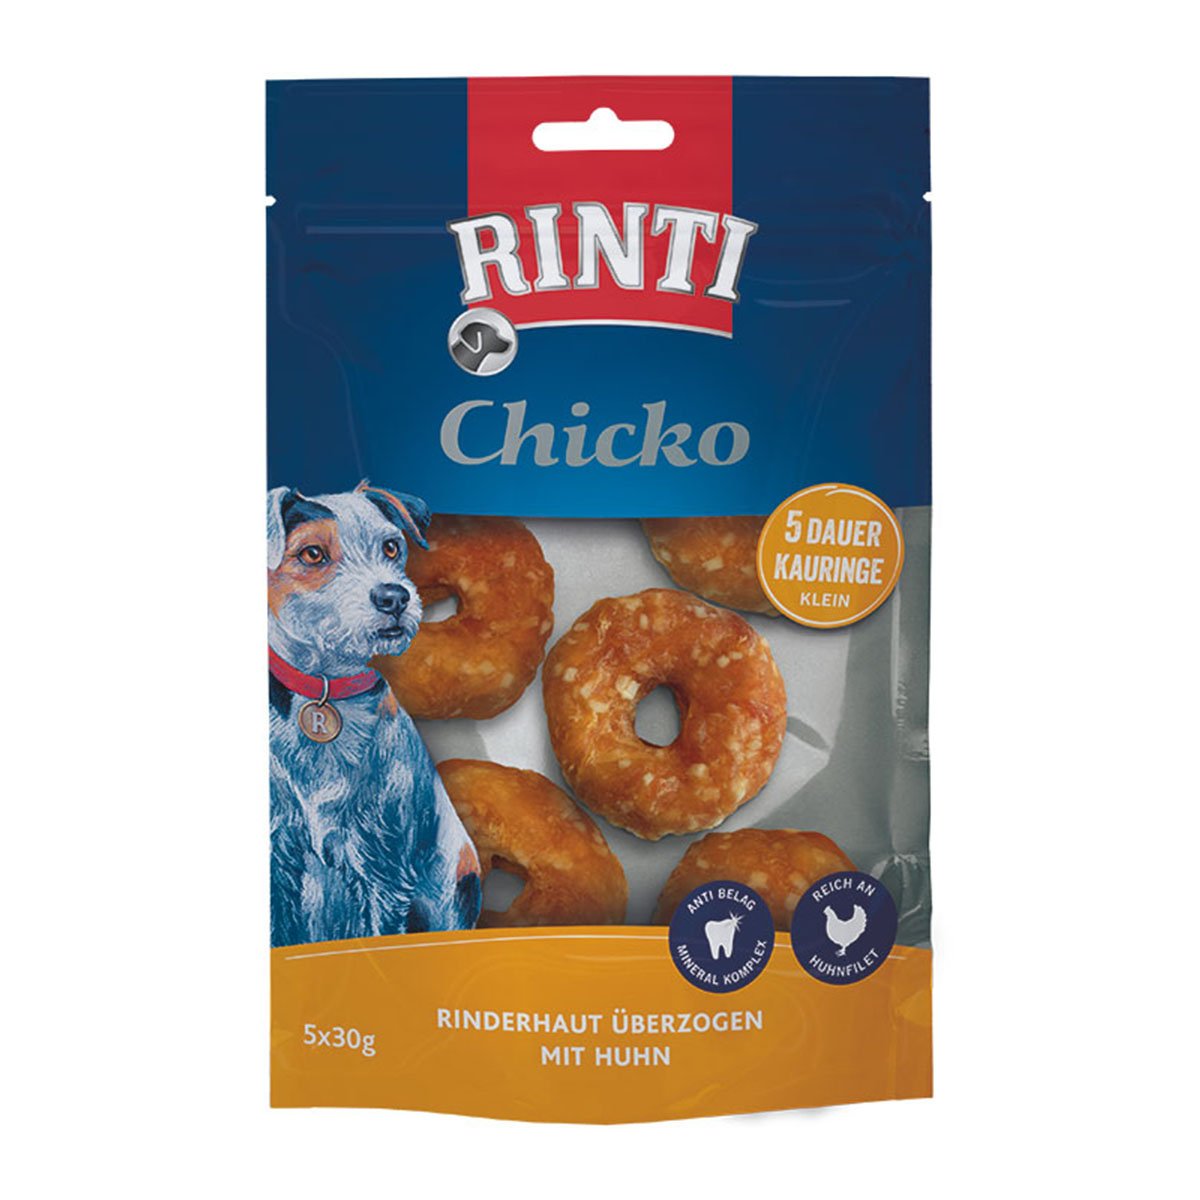 RINTI Chicko Dauer-Kauring Klein 5x30g von Rinti